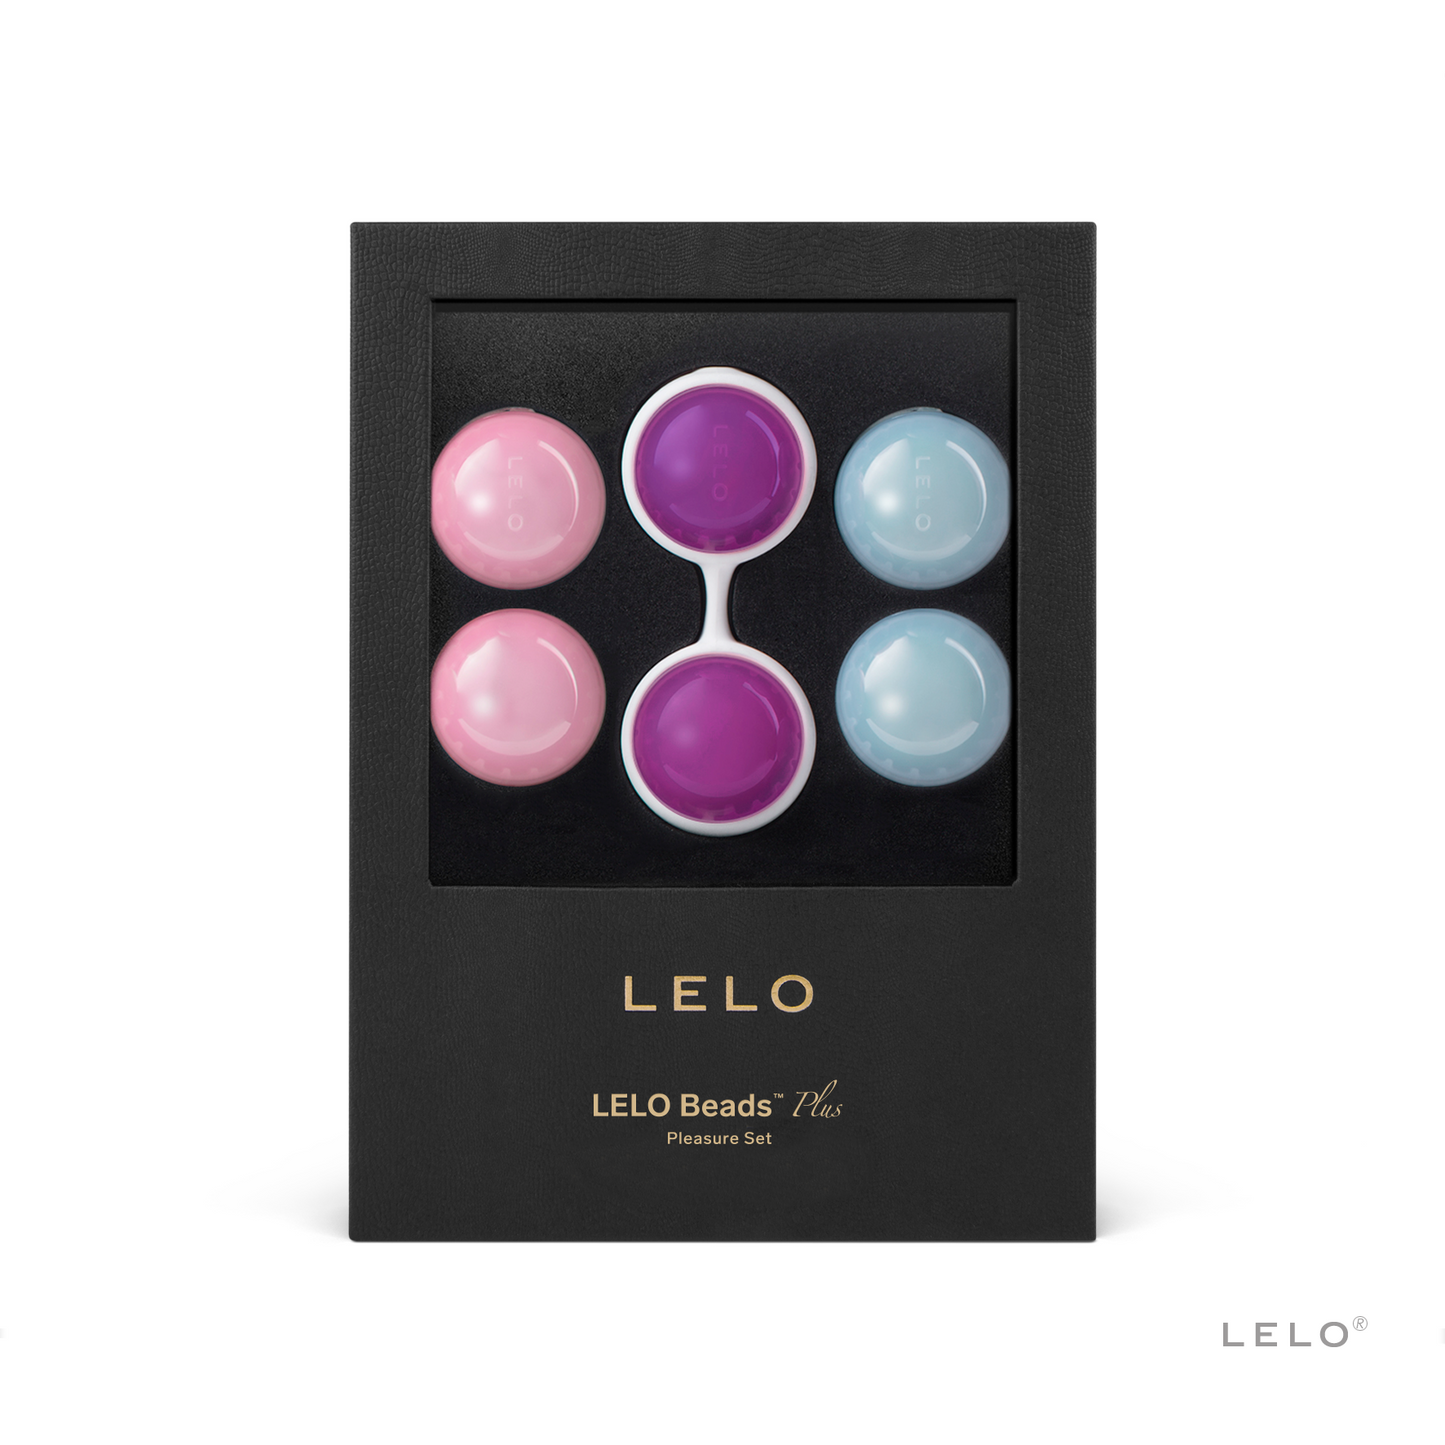 Luna Beads de LELO - Bolas chinas para fortalecer el suelo pélvico